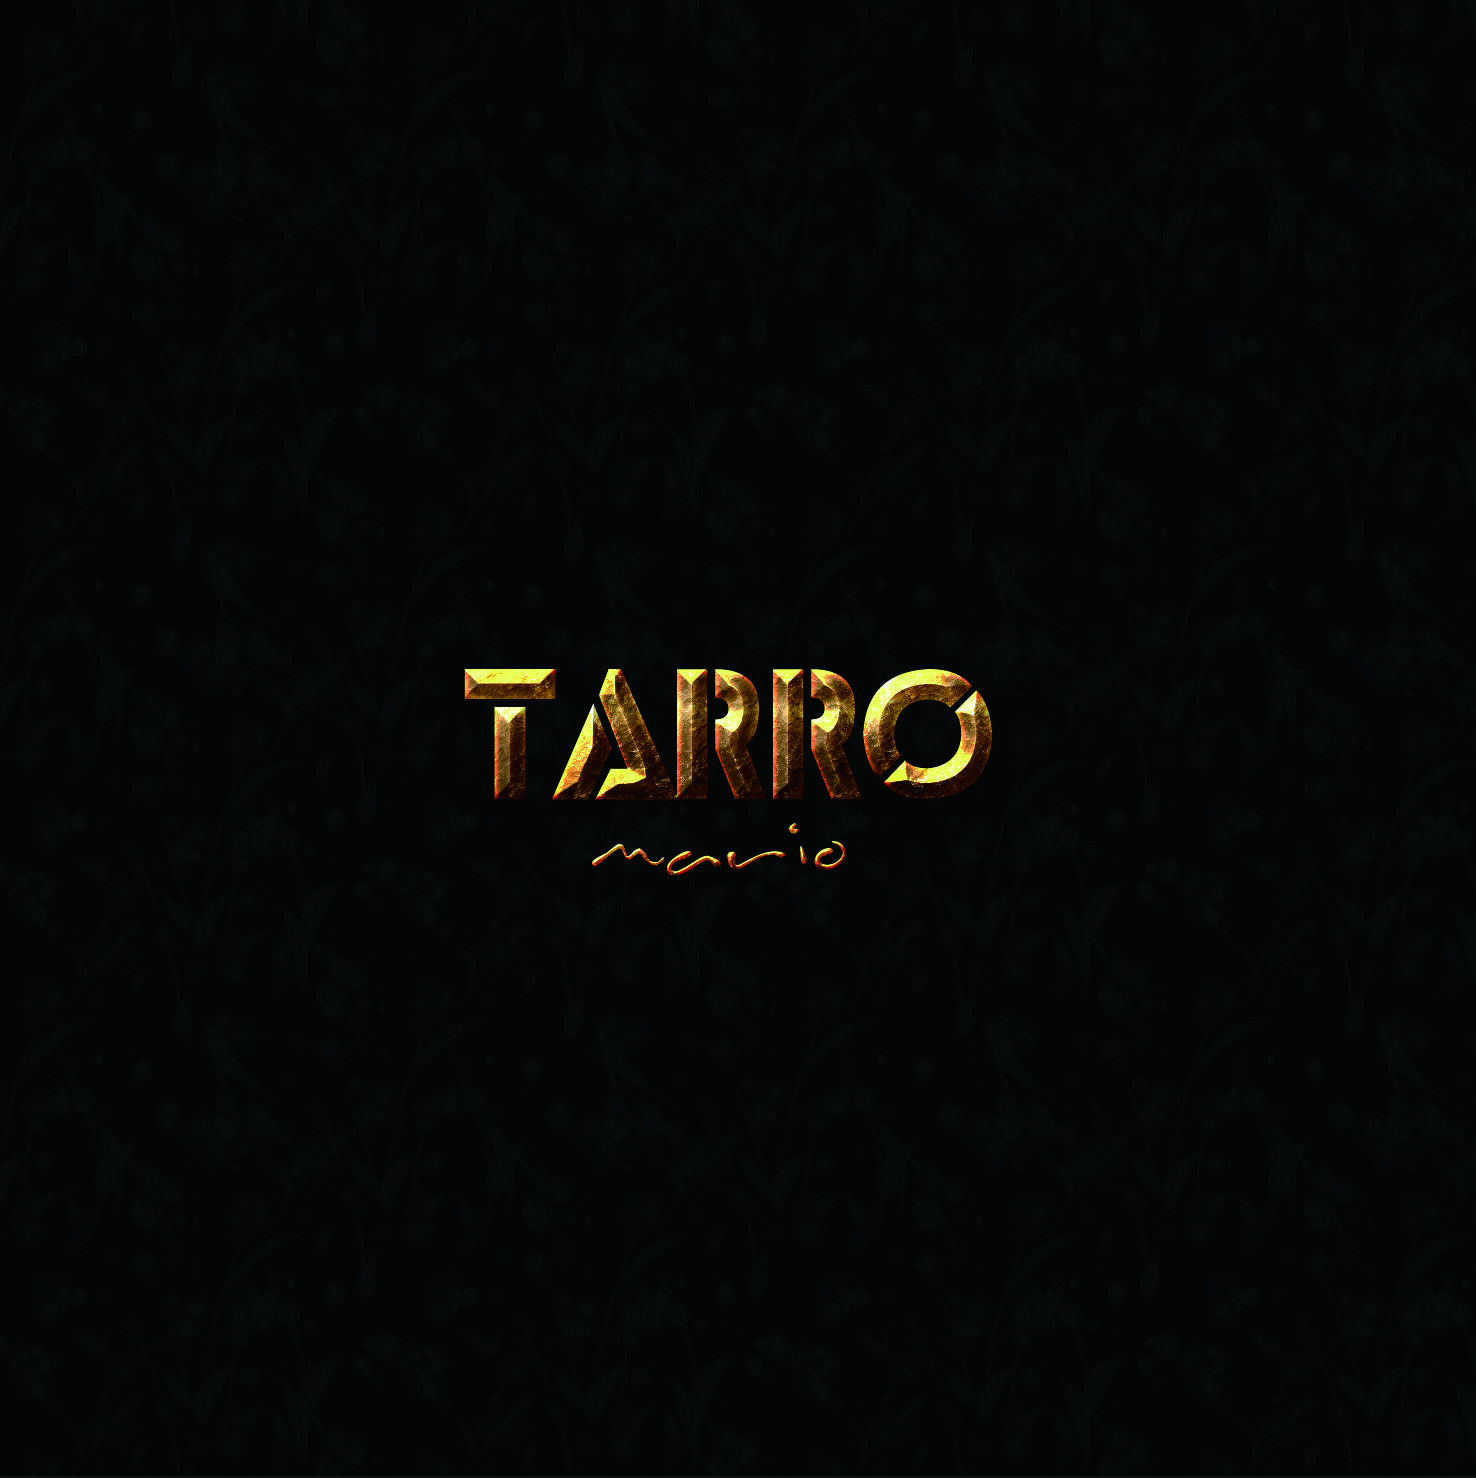 历书·乌衣歌词 歌手Mario-专辑Tarro-单曲《历书·乌衣》LRC歌词下载